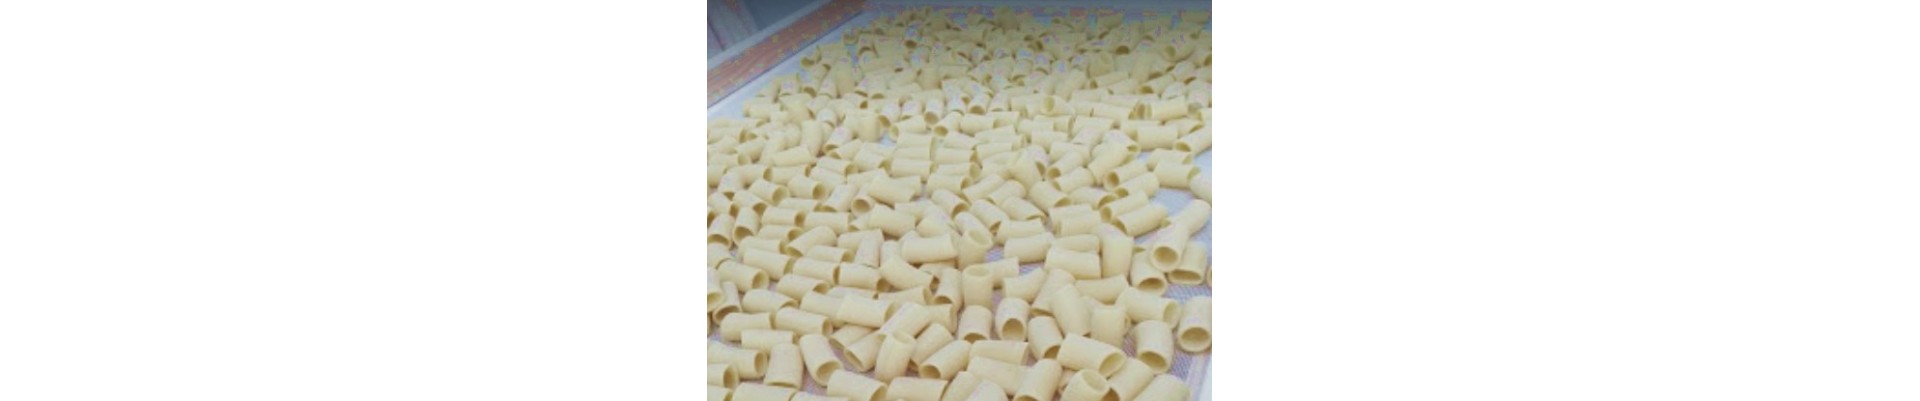 Pâtes artisanales composées uniquement de blé dur sicilien provenant d'une chaîne d'approvisionnement certifiée